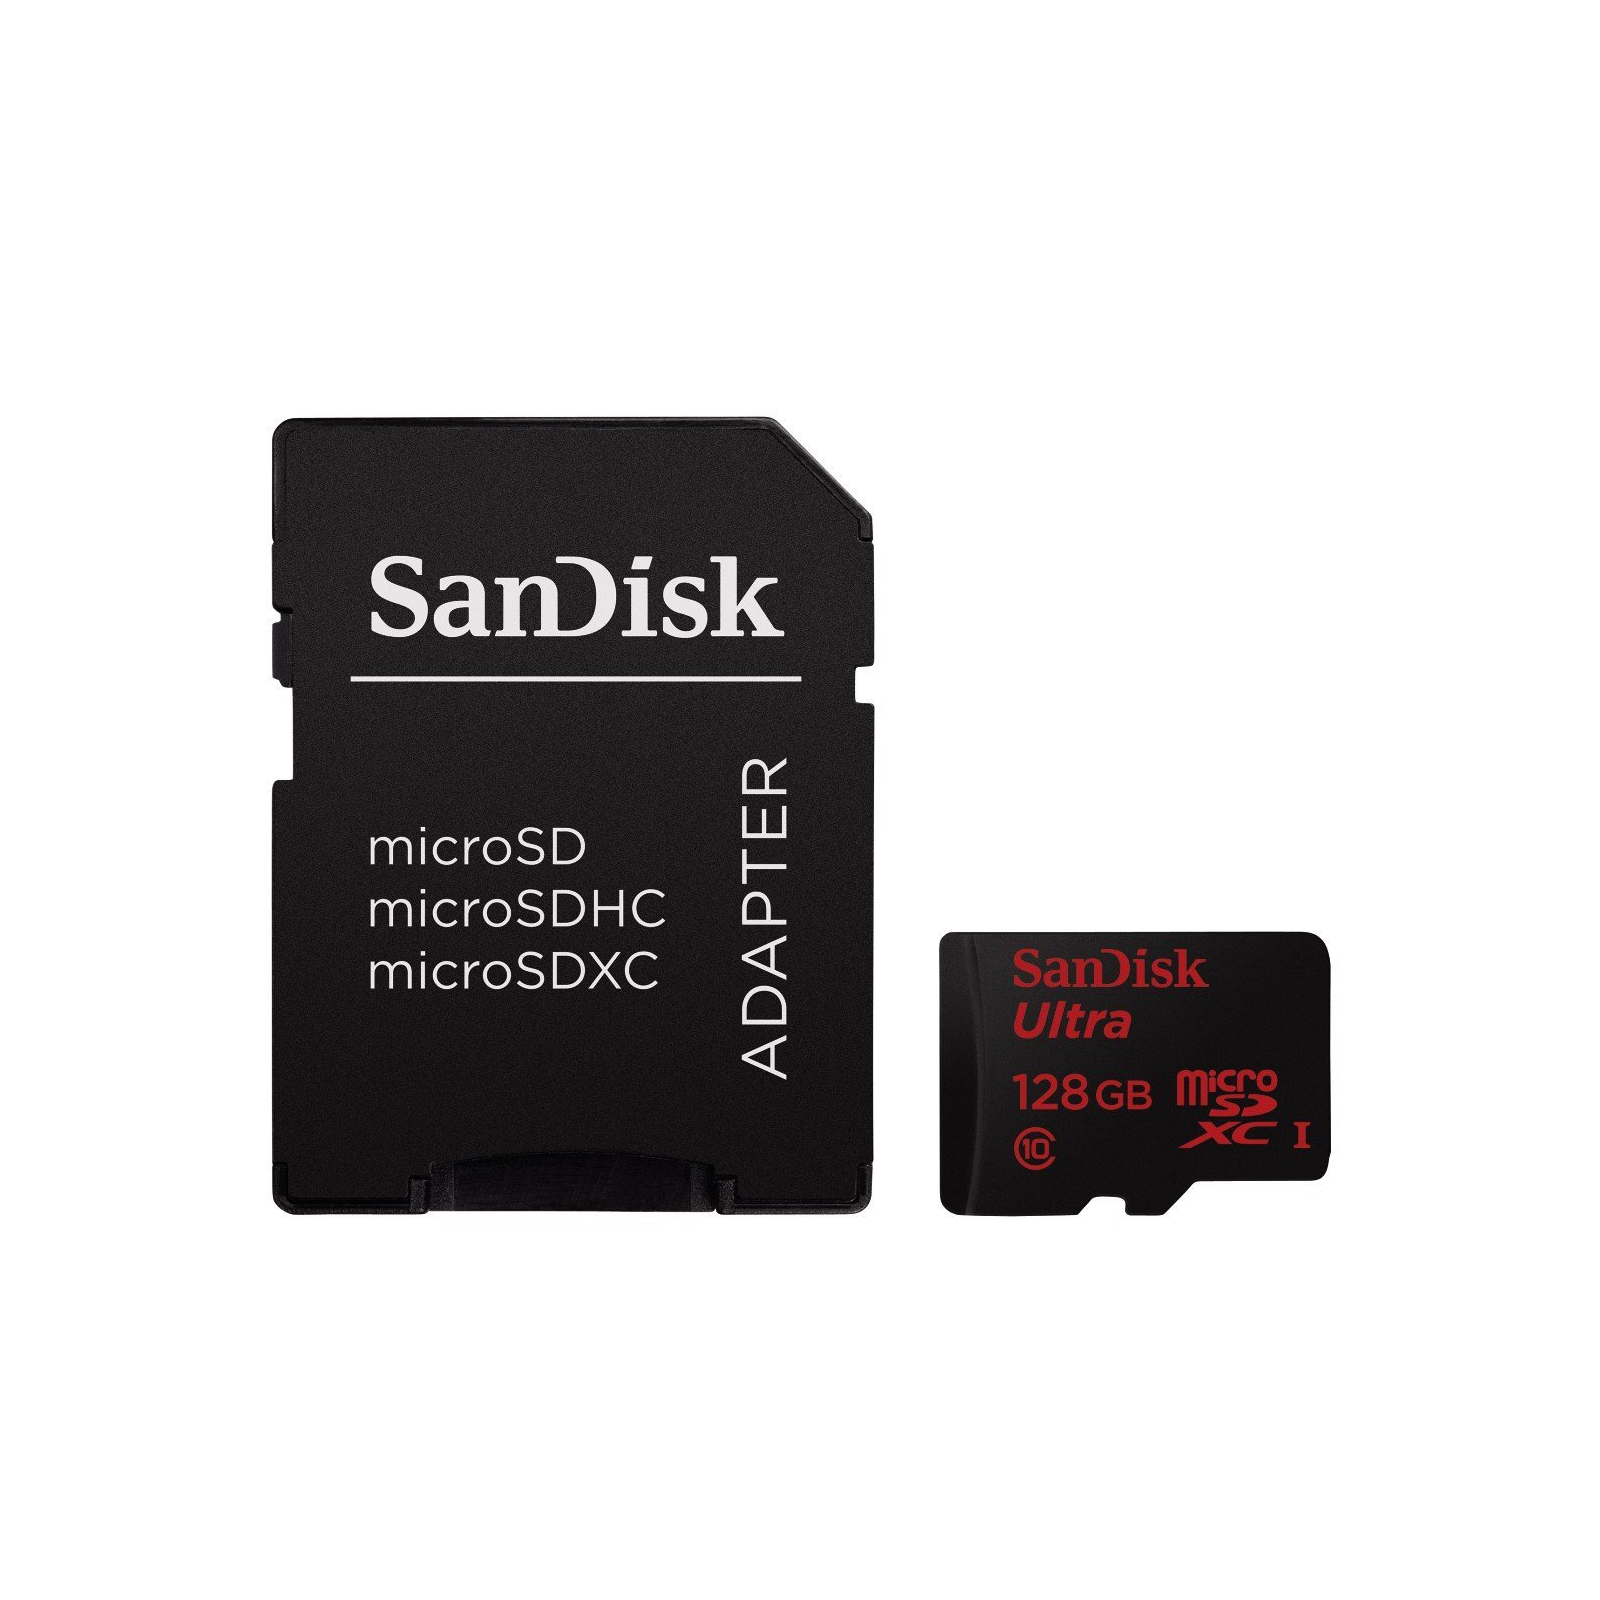 Карта памяти SanDisk Ultra 128GB microSDXC Class 10 UHS-I 48MB/s Android (SDSDQUAN-128G-G4A) изображение 4